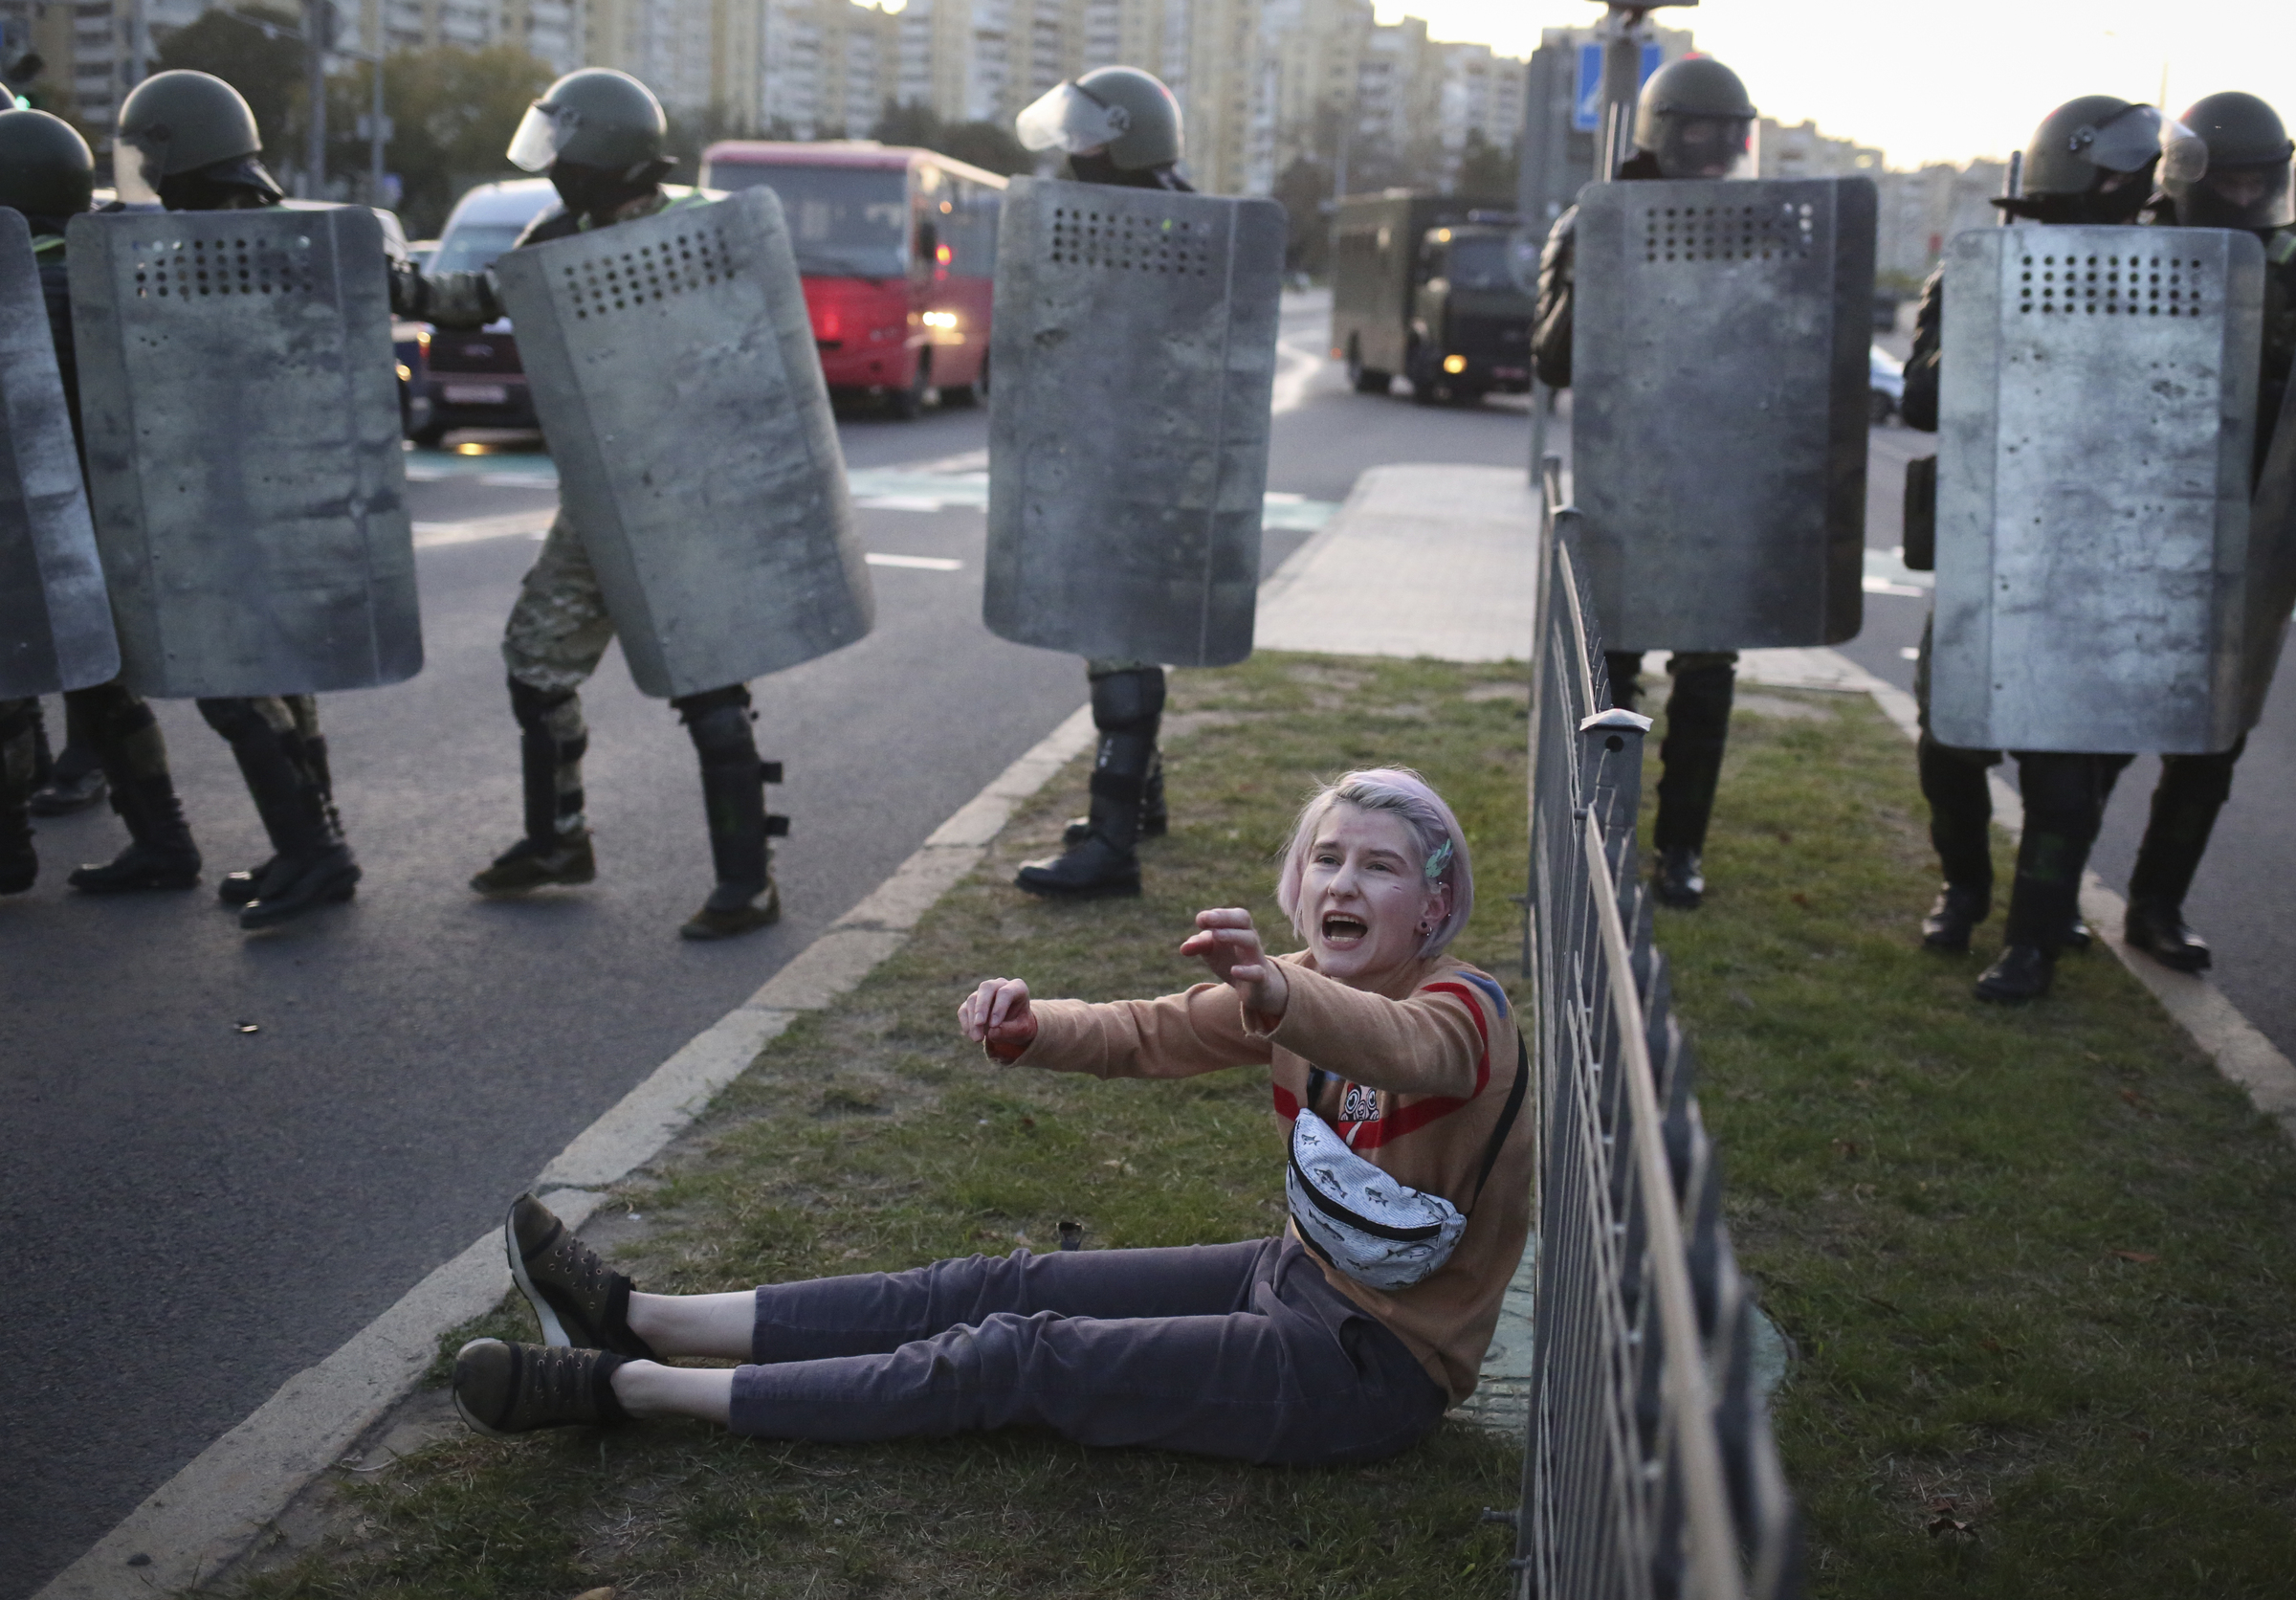 Bielorussia, proteste e scontri nella giornata di insediamento del Presidente Lukashenko a Minsk